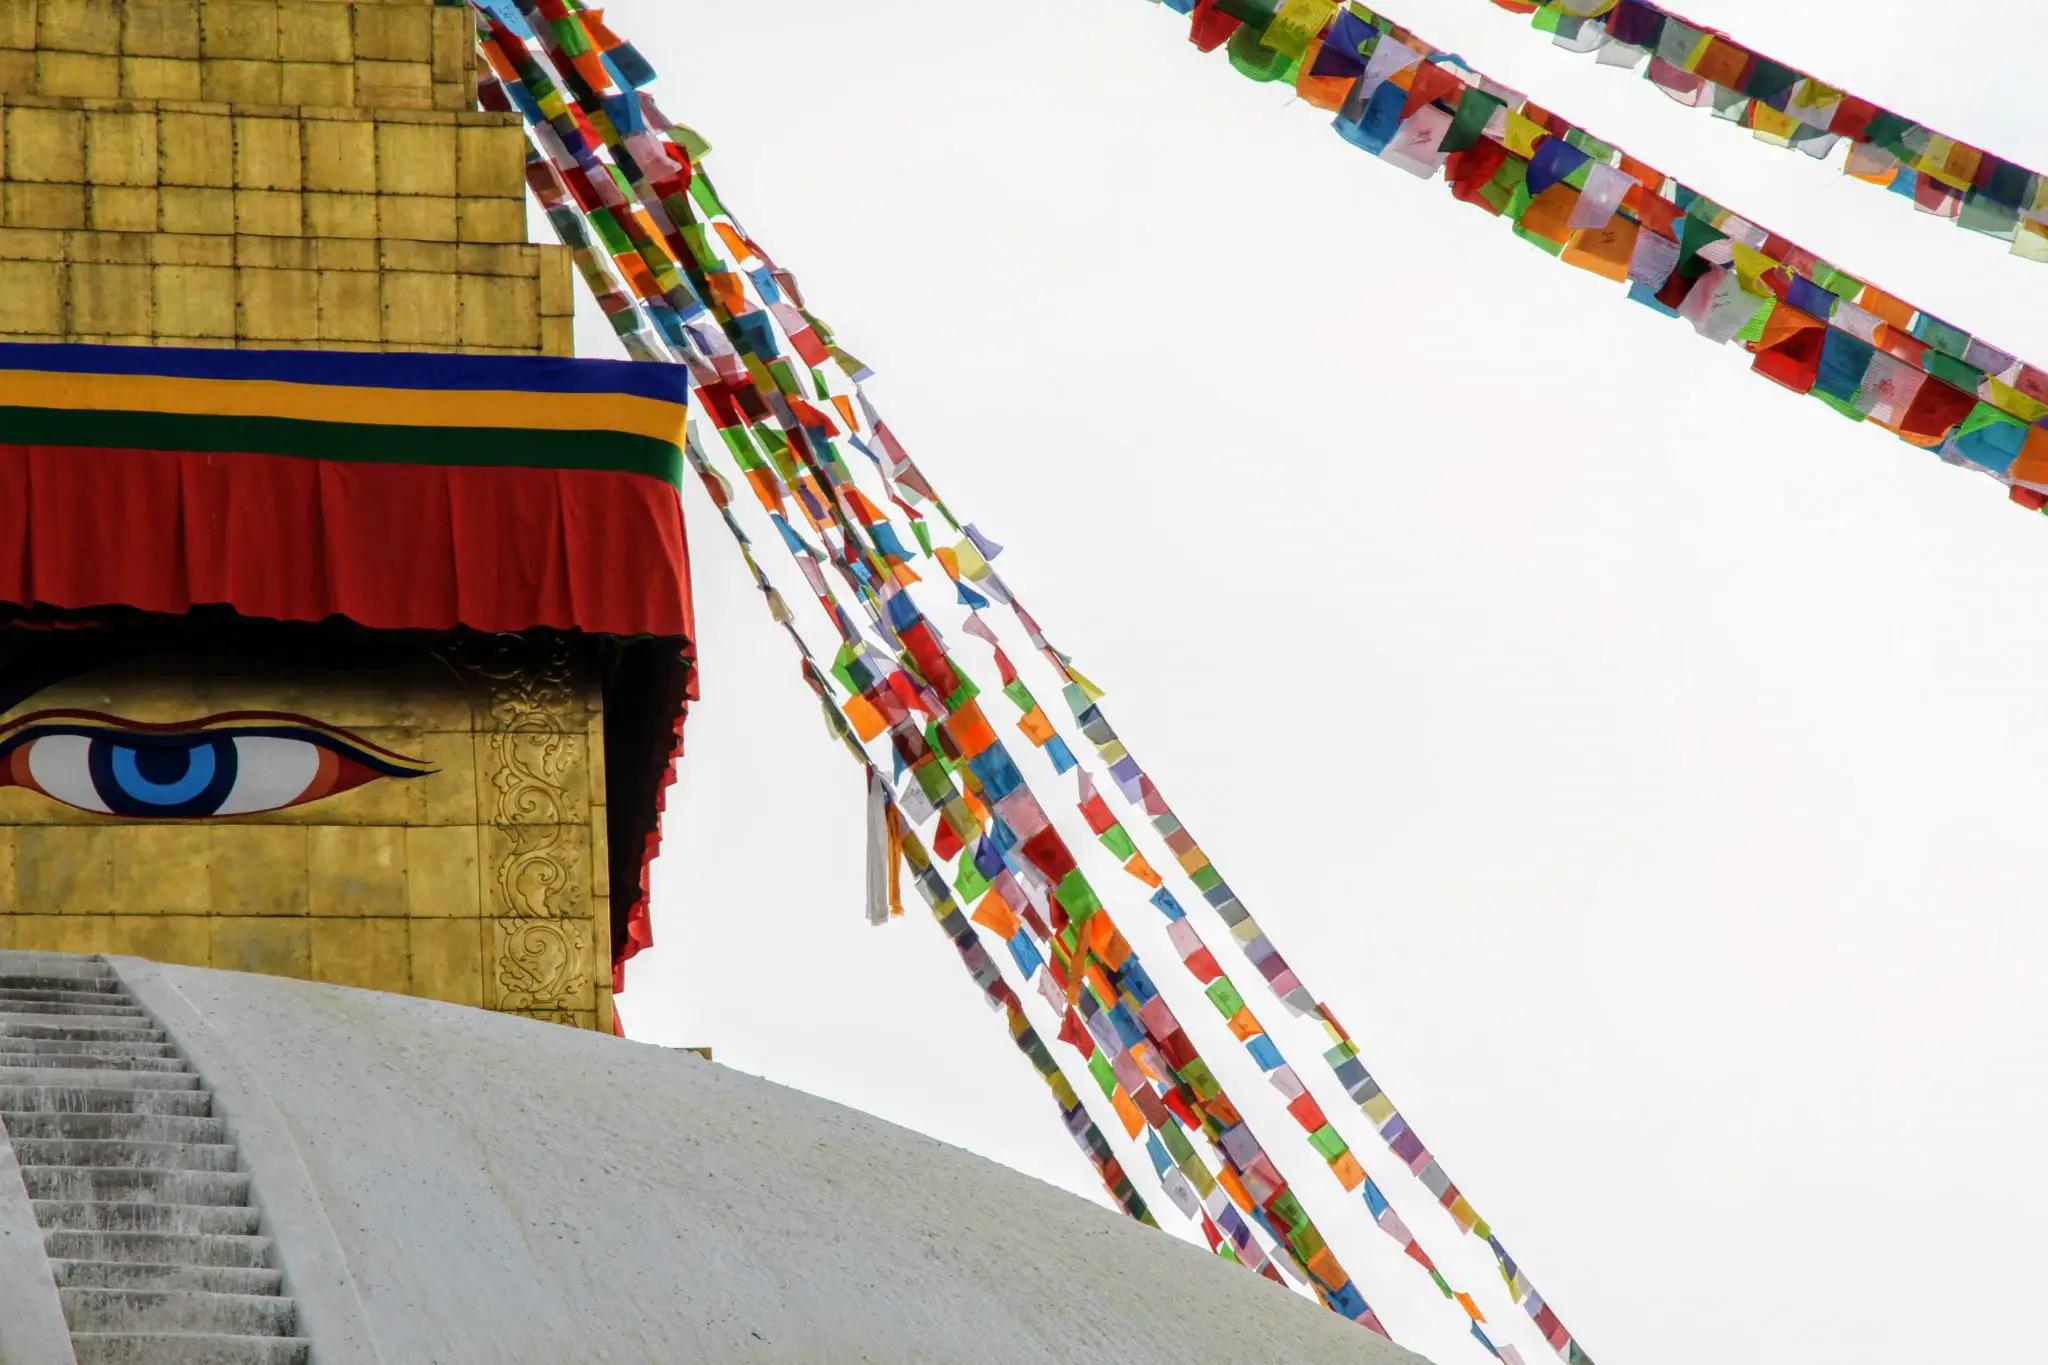 Boudhanath Stupa, Kathmandu, Nepal